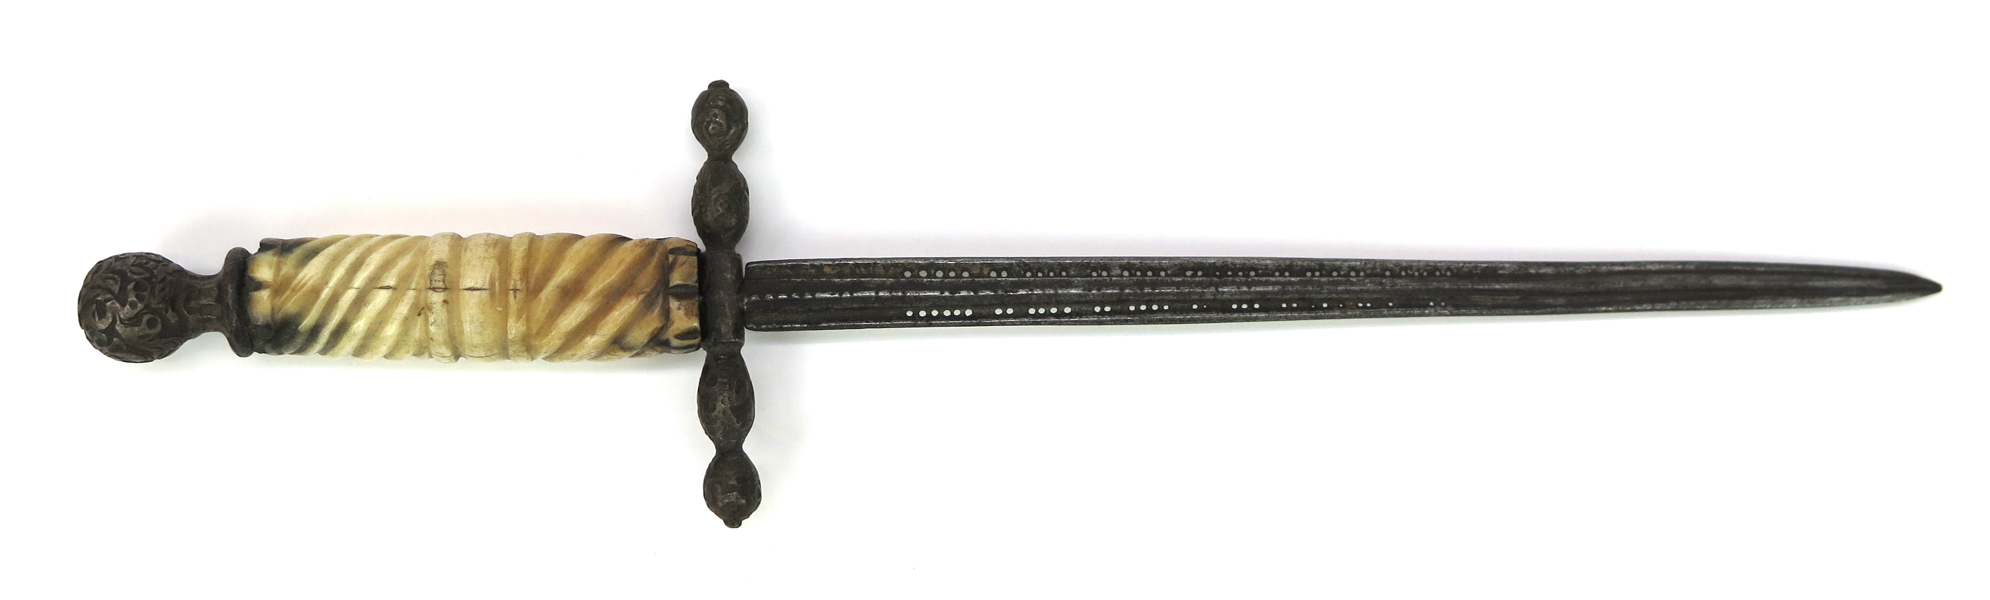 Vänsterhandsdolk, stål med benskaft, så kallad stiletto, 1600-tal, l 27 cm_33784a_8dbe835e11c1cb0_lg.jpeg